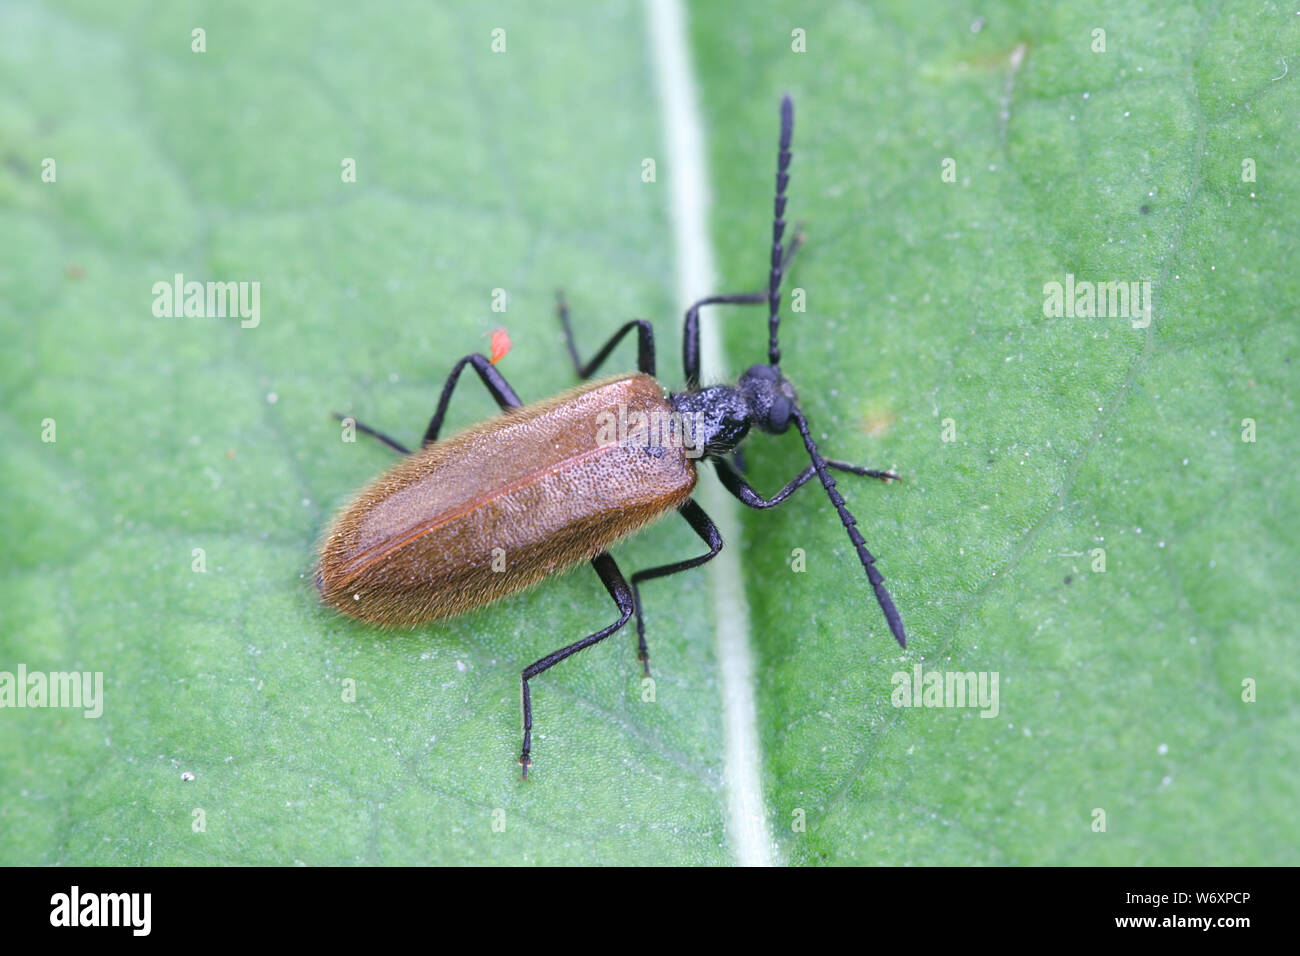 Lagria hirta, conocido como el escarabajo o Lagria Rough-Haired escarabajo Darkling Foto de stock